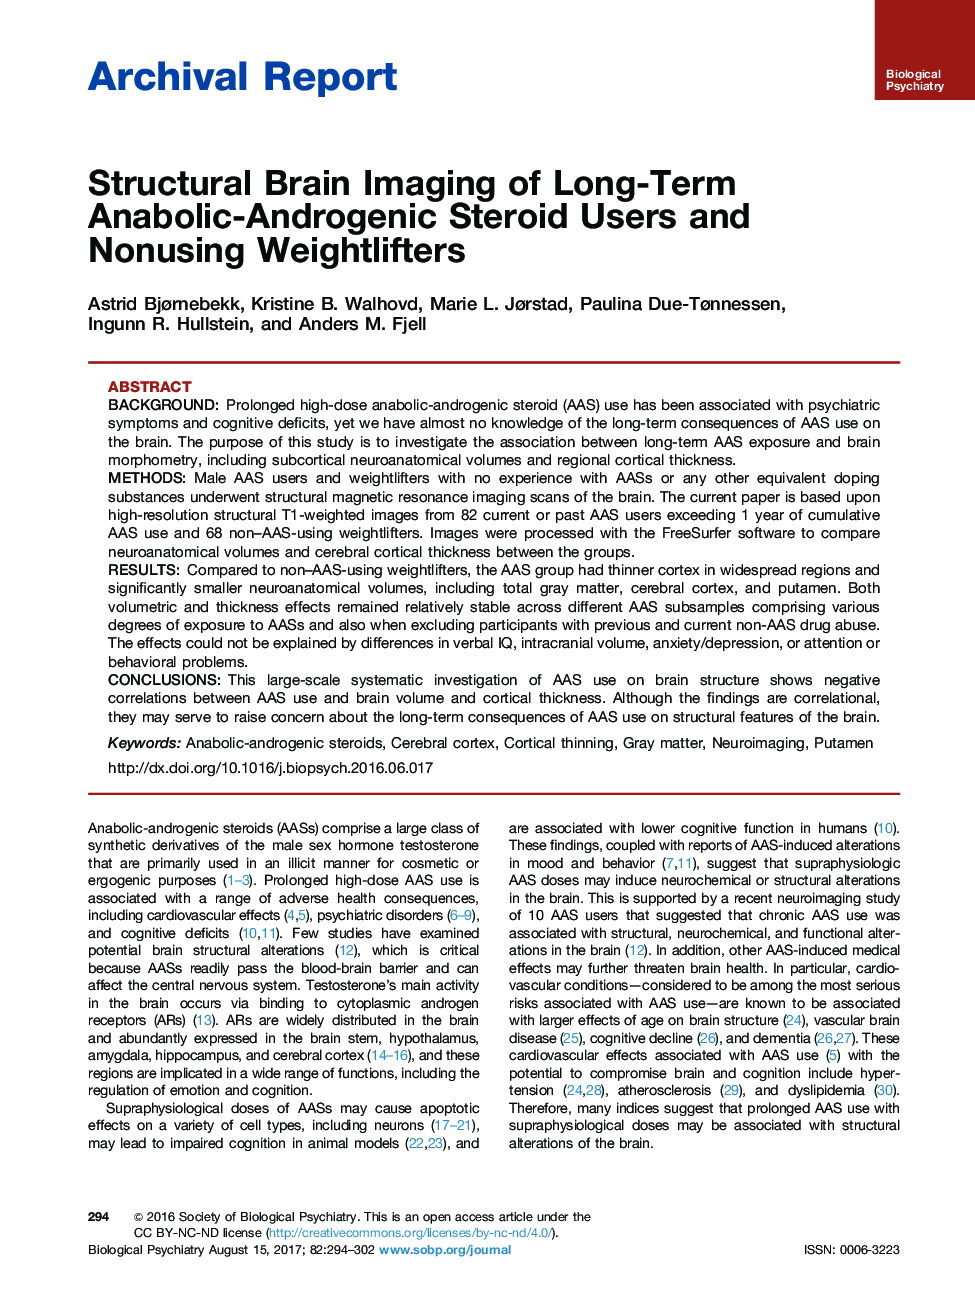 گزارش بایگانی تصویربرداری مغز گرافیک از مصرف کنندگان استروئید آنابولیک آندروژنی طولانی مدت و وزنه برداری غیر مجاز 